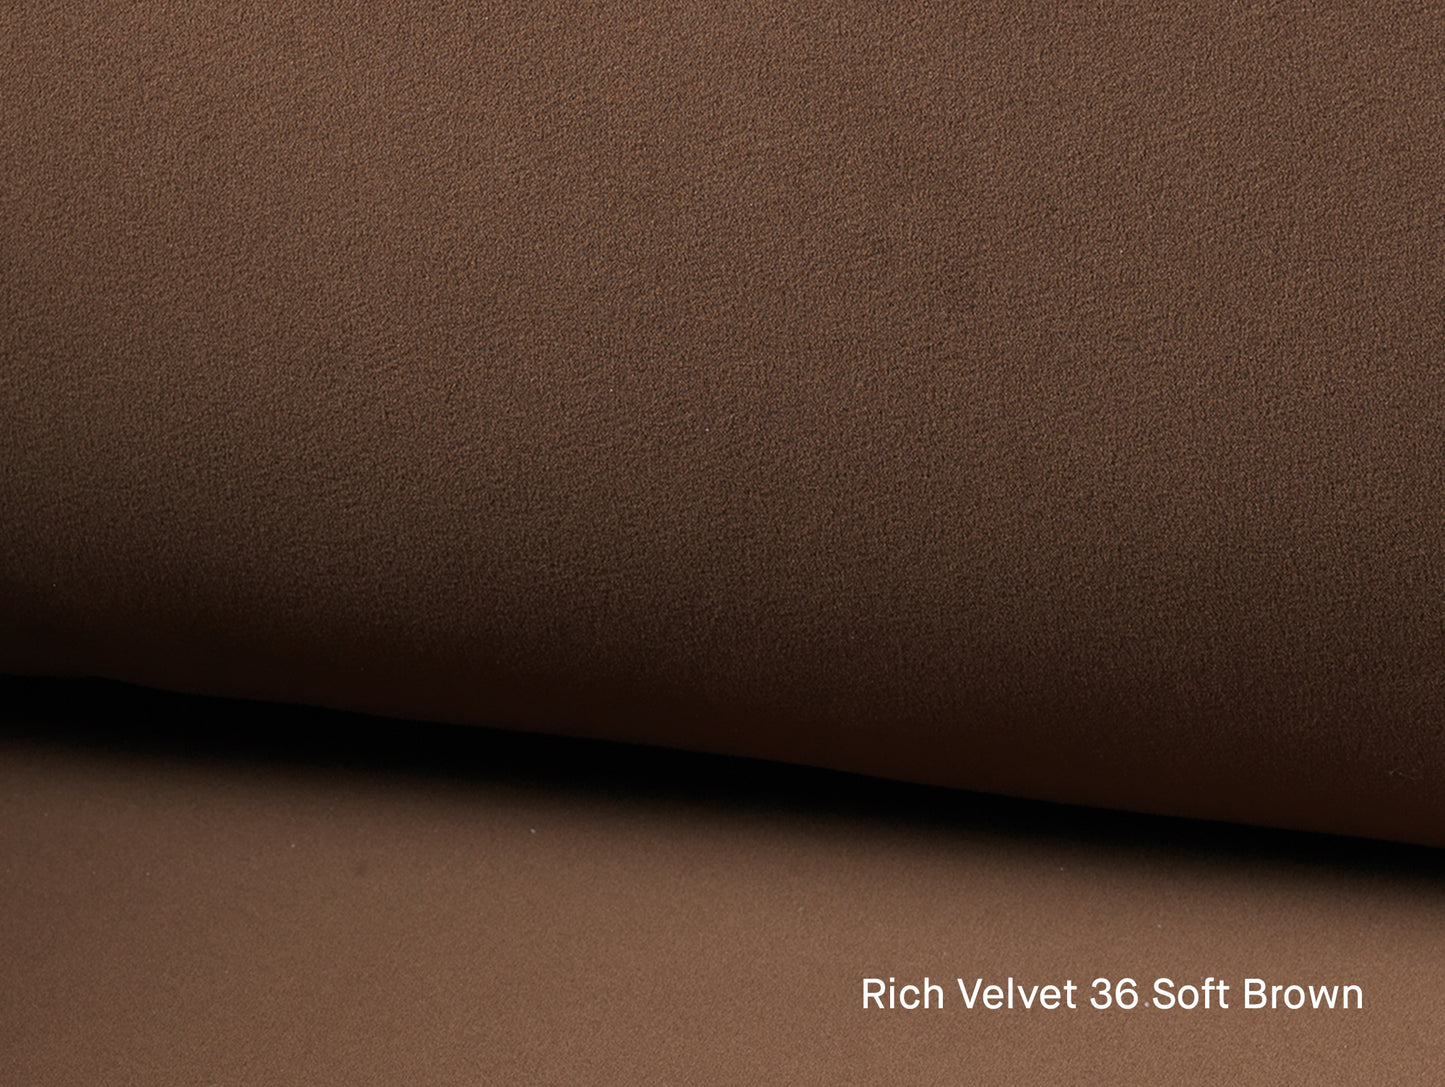 Rico 4-Seater Sofa by Ferm Living - Rich Velvet 36